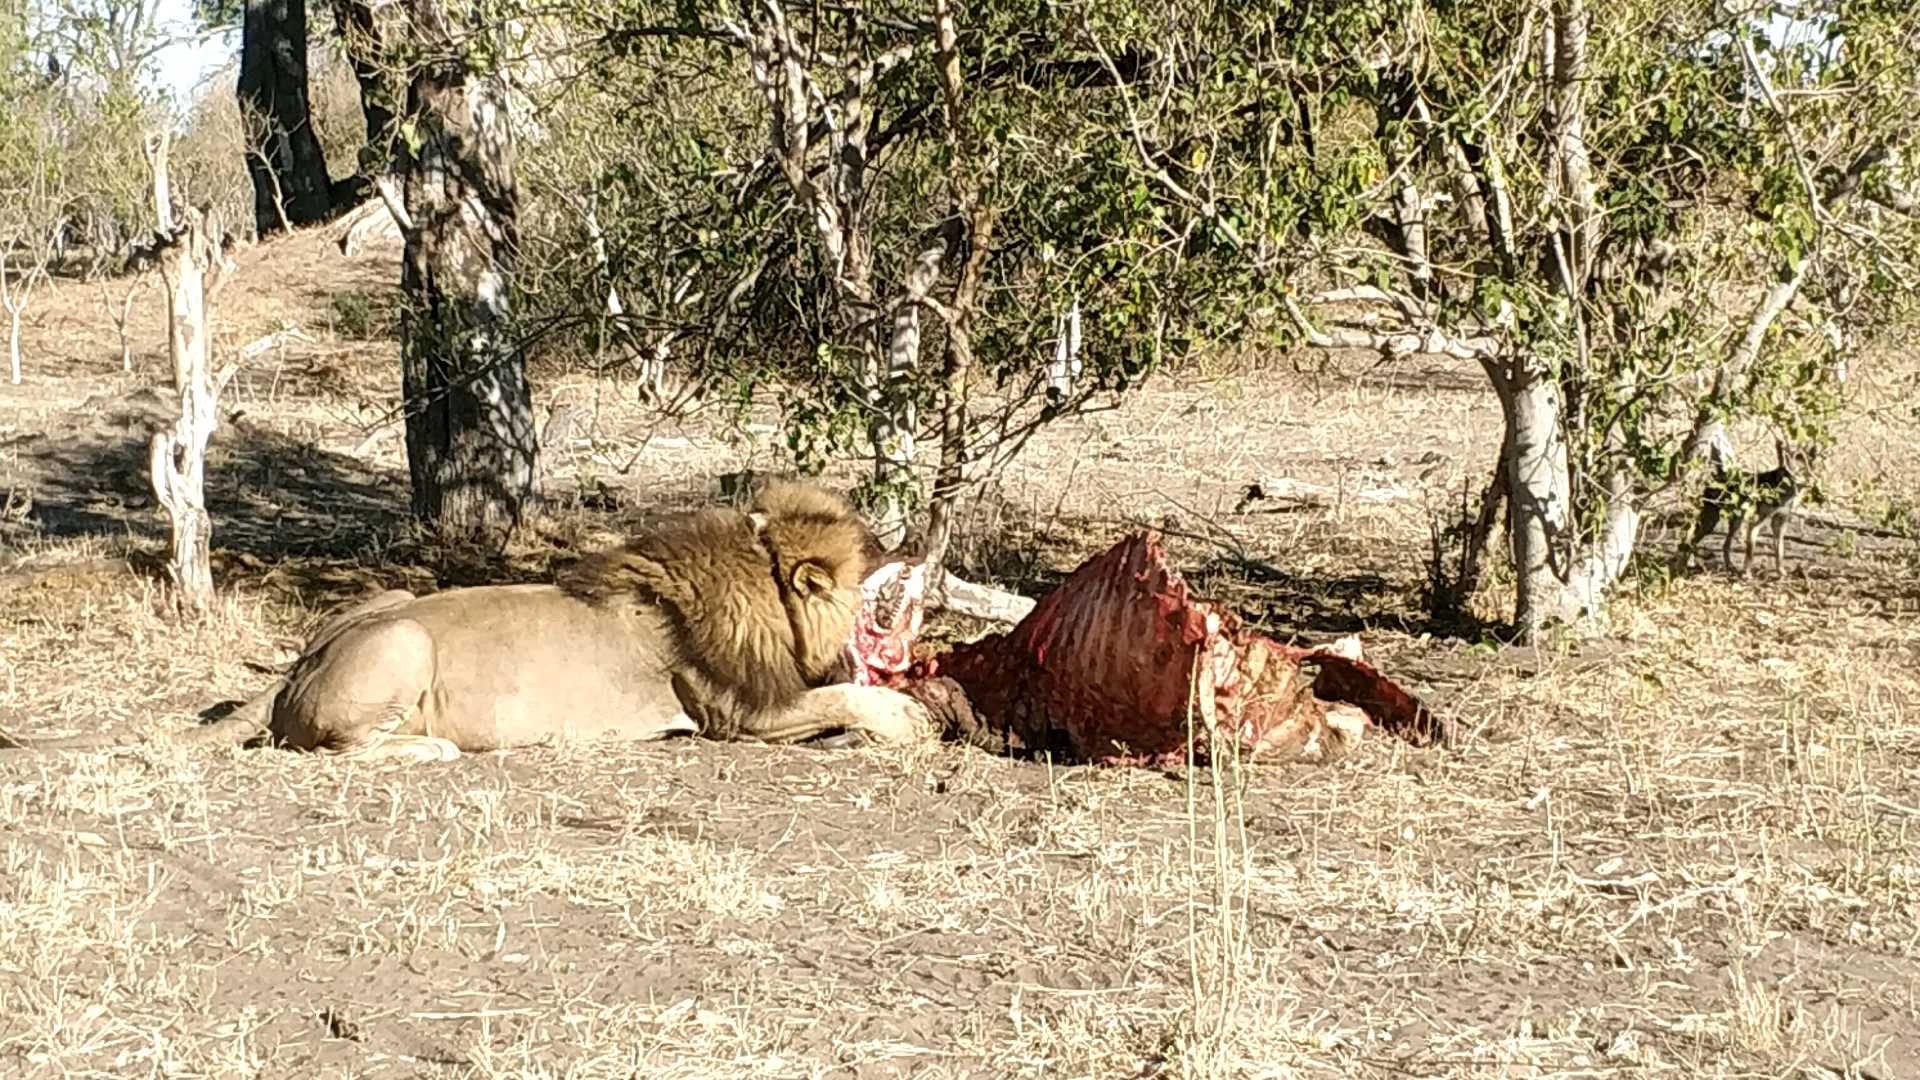 在莫雷米保护区尽享safaris 看雄狮 大快朵颐， 旁边还有豺狼